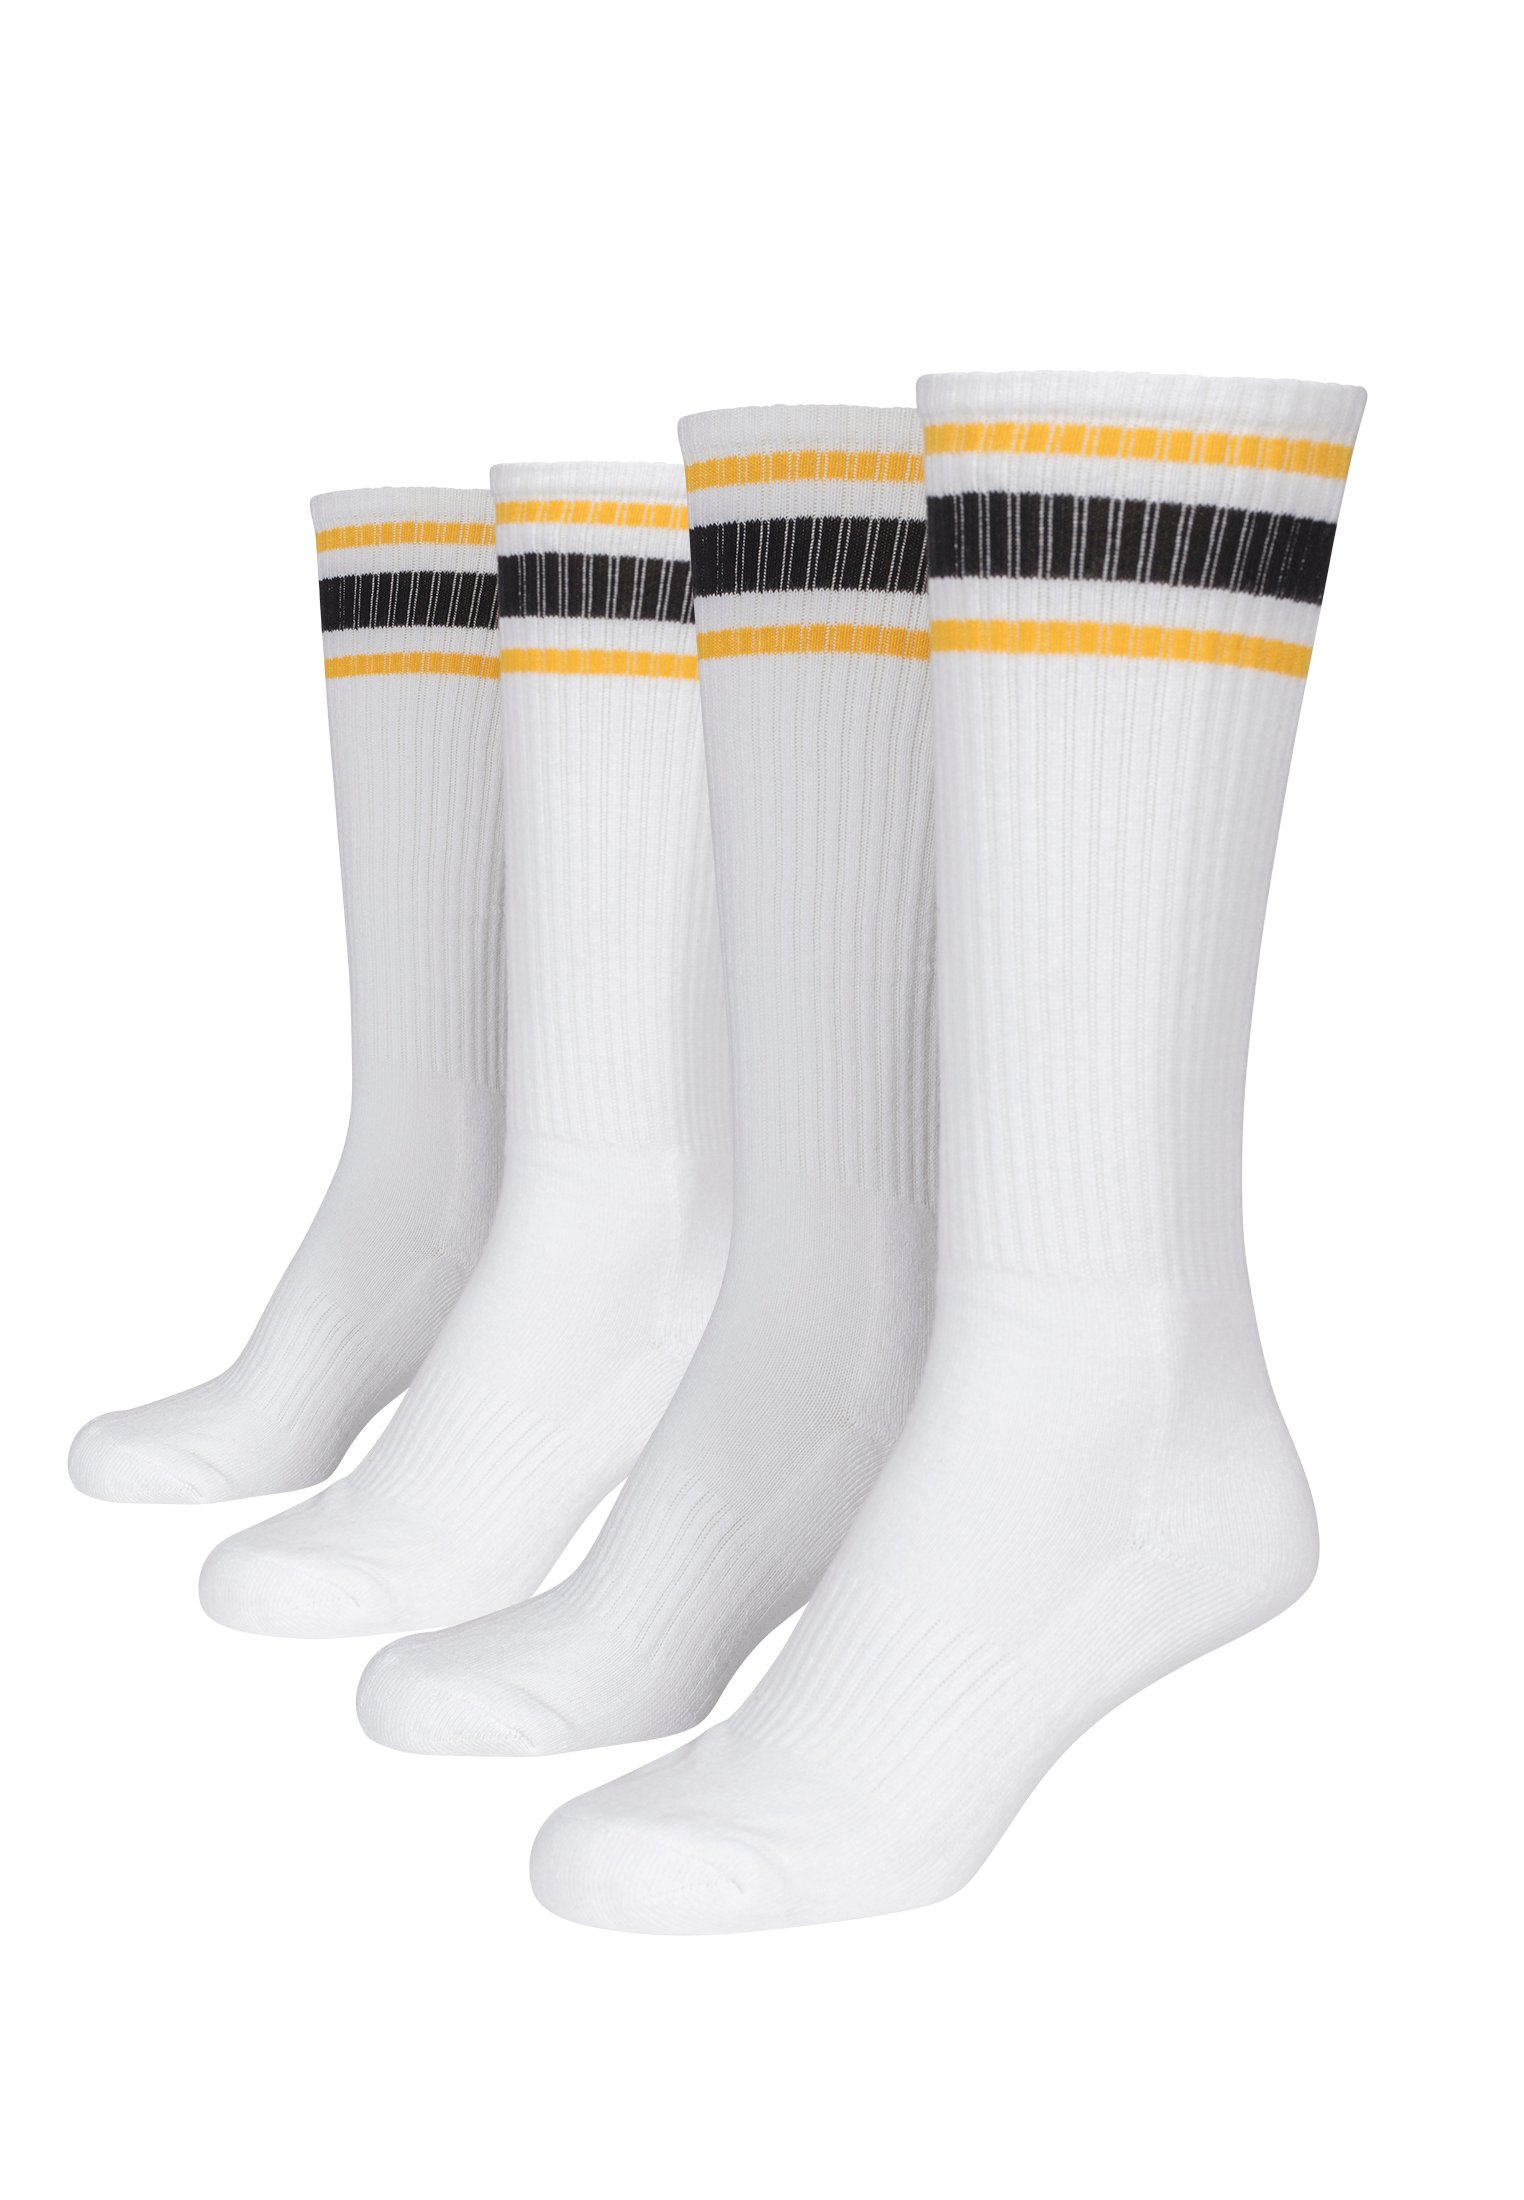 Long Stripe Socks 2 Pack - White/Yellow/Black